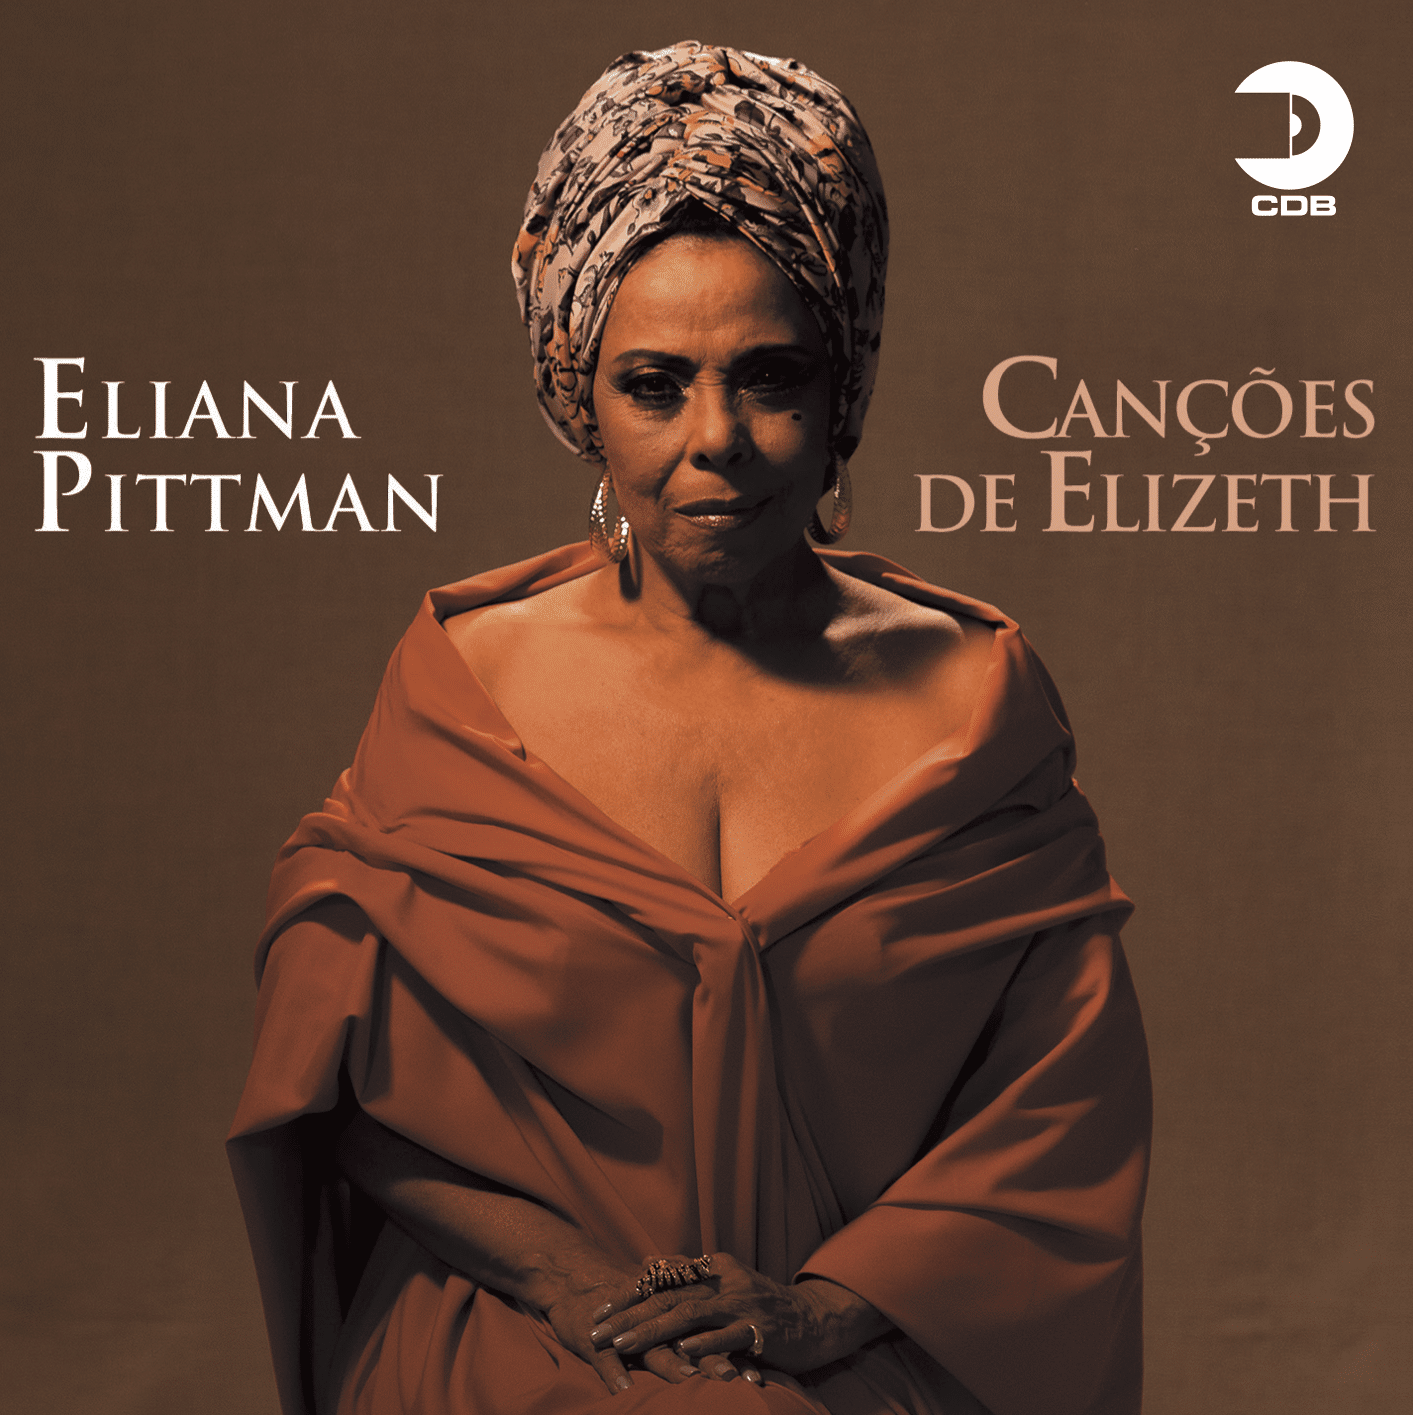 revistaprosaversoearte.com - Companhia de Discos do Brasil lança 'Canções de Elizeth' de Eliana Pittman em CD